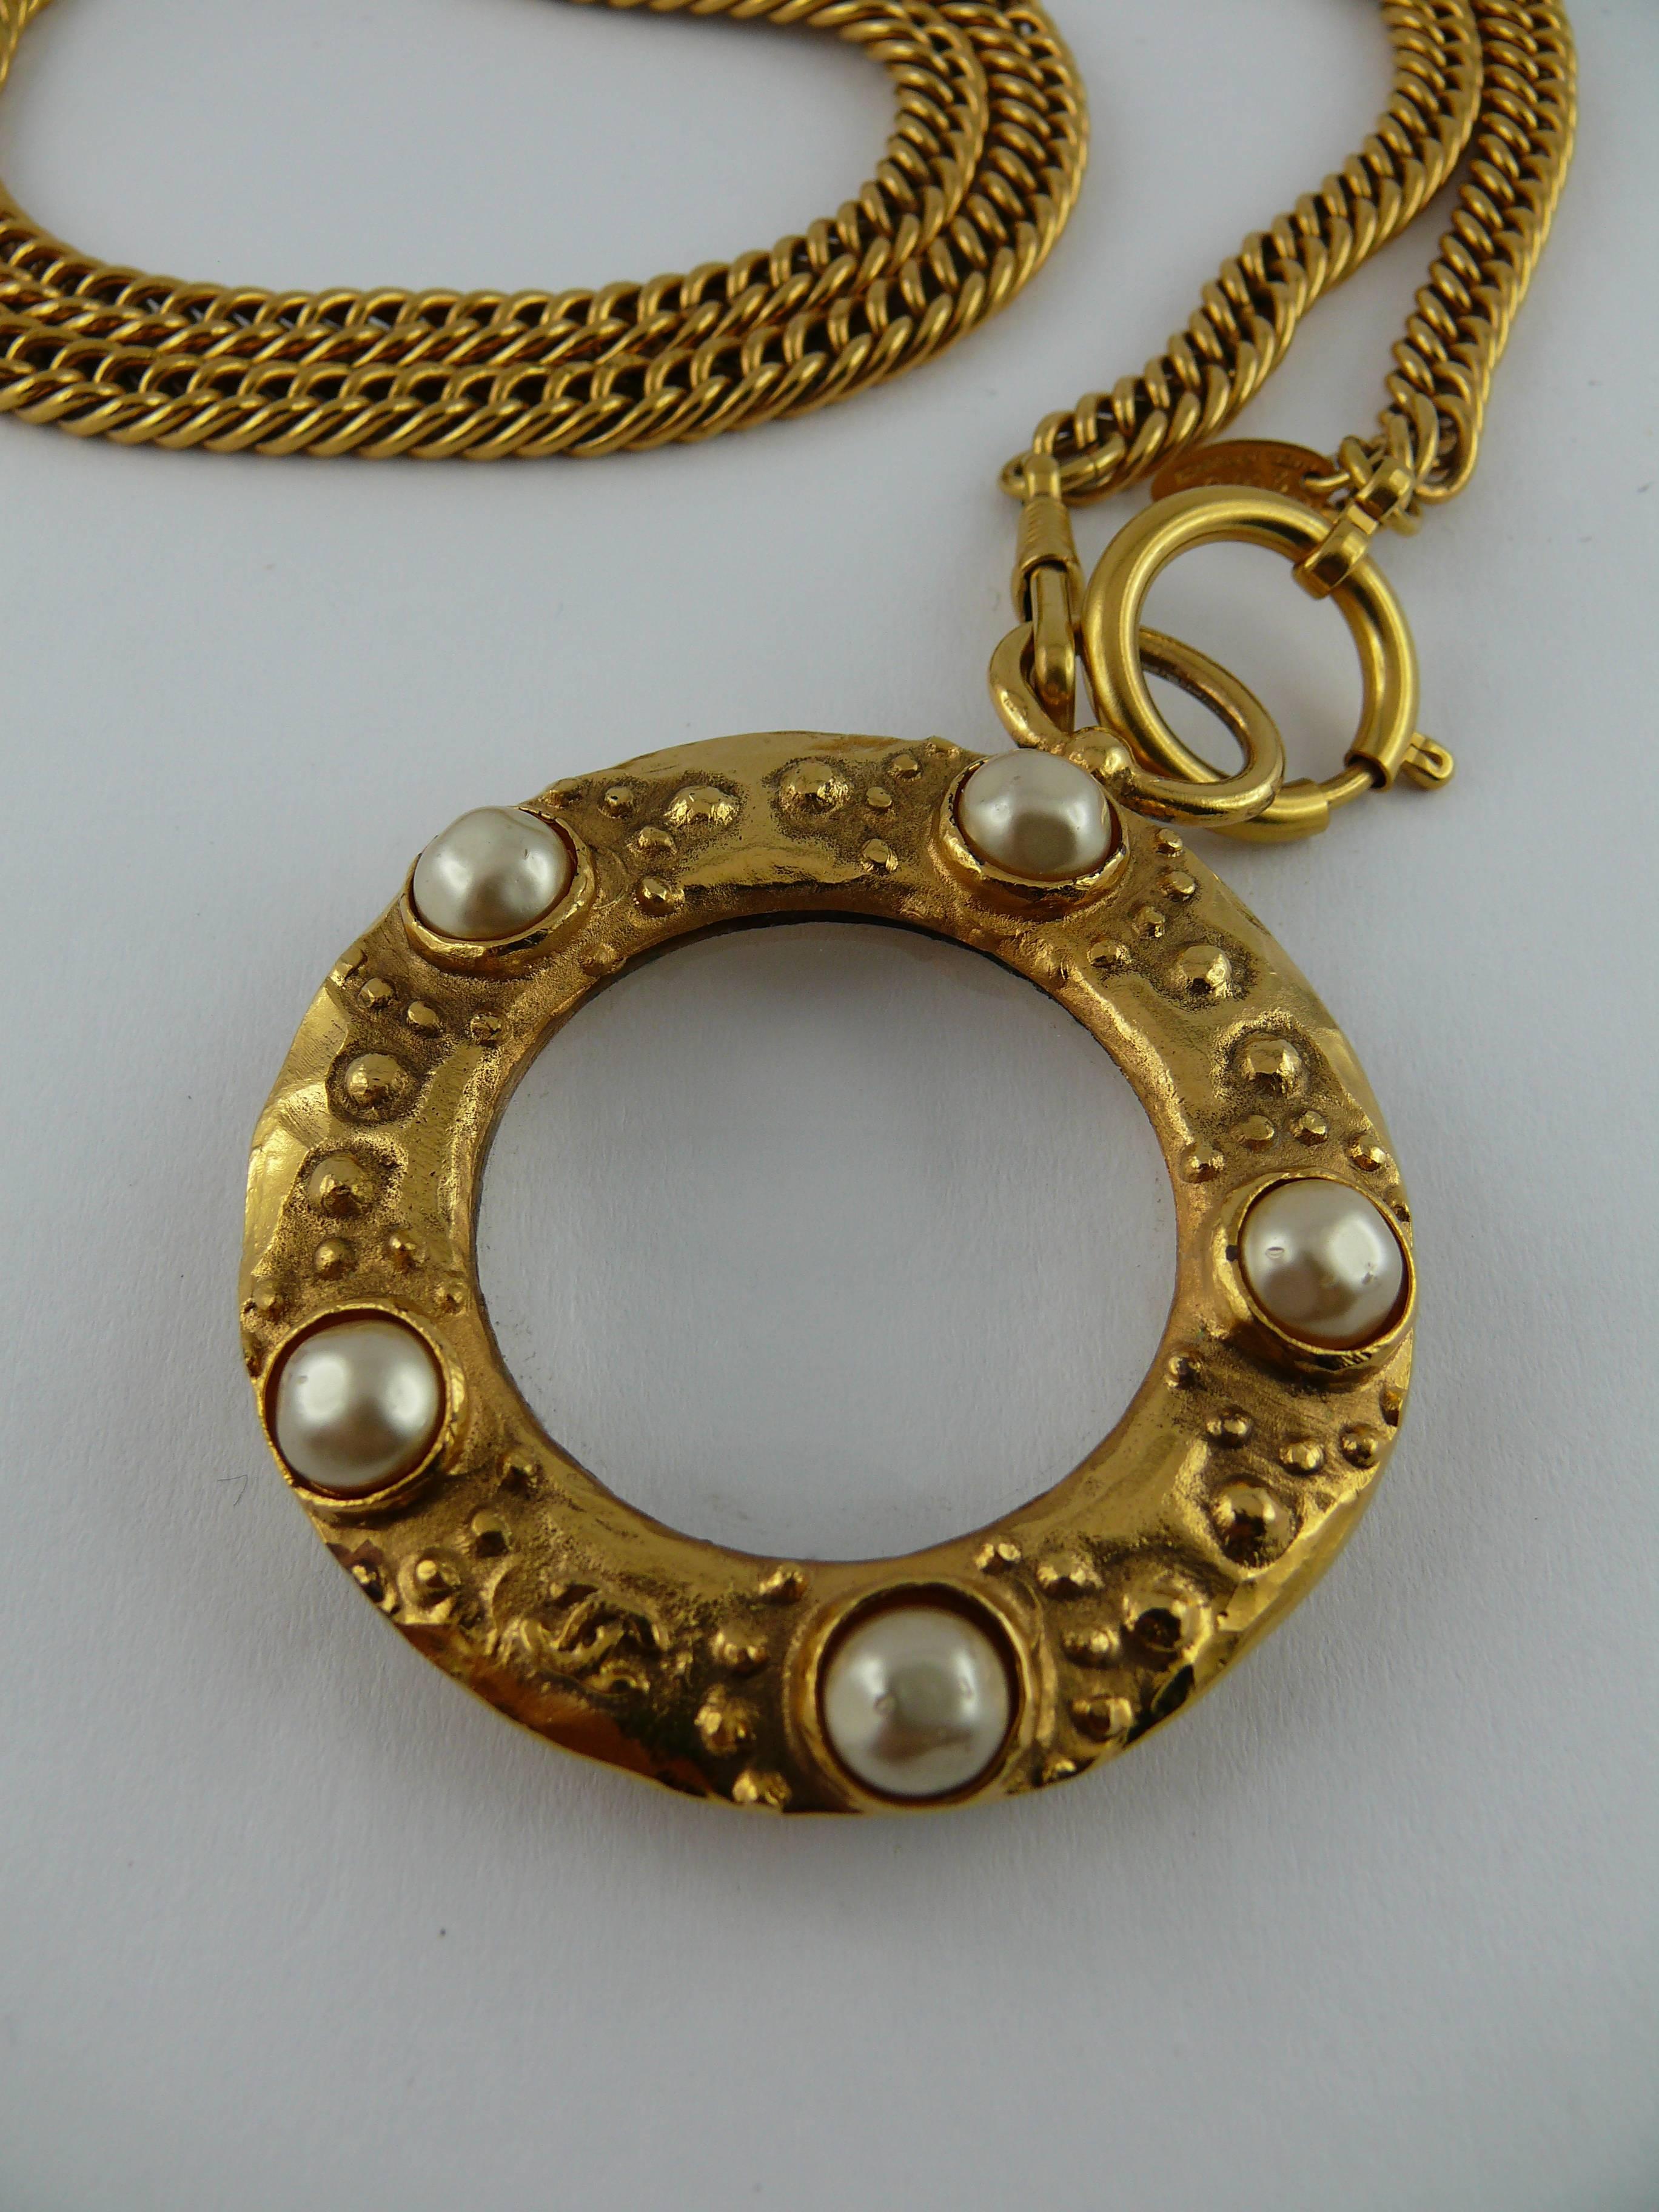 CHANEL Vintage-Sautoir-Halskette mit klobiger goldfarbener Gliederkette und Lupenanhänger, der mit GRIPOIX-Kunstperlen verziert ist.

CC-Logo auf beiden Seiten des Anhängers.

Sprungring-Verschluss.

Gestempelt CHANEL 2 3 Hergestellt in